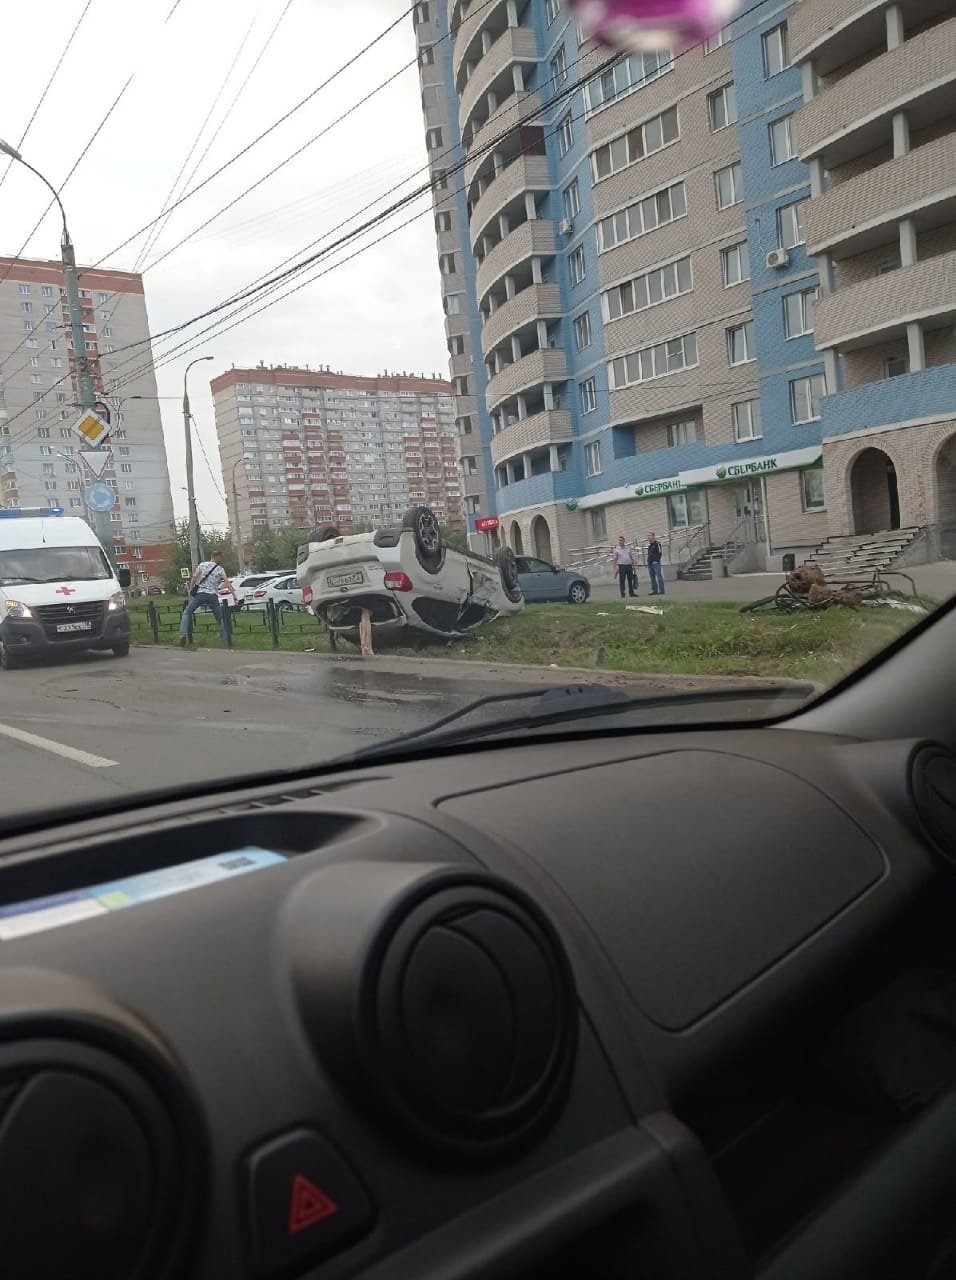 

Лишённый прав водитель перевернулся на машине в Ижевске

